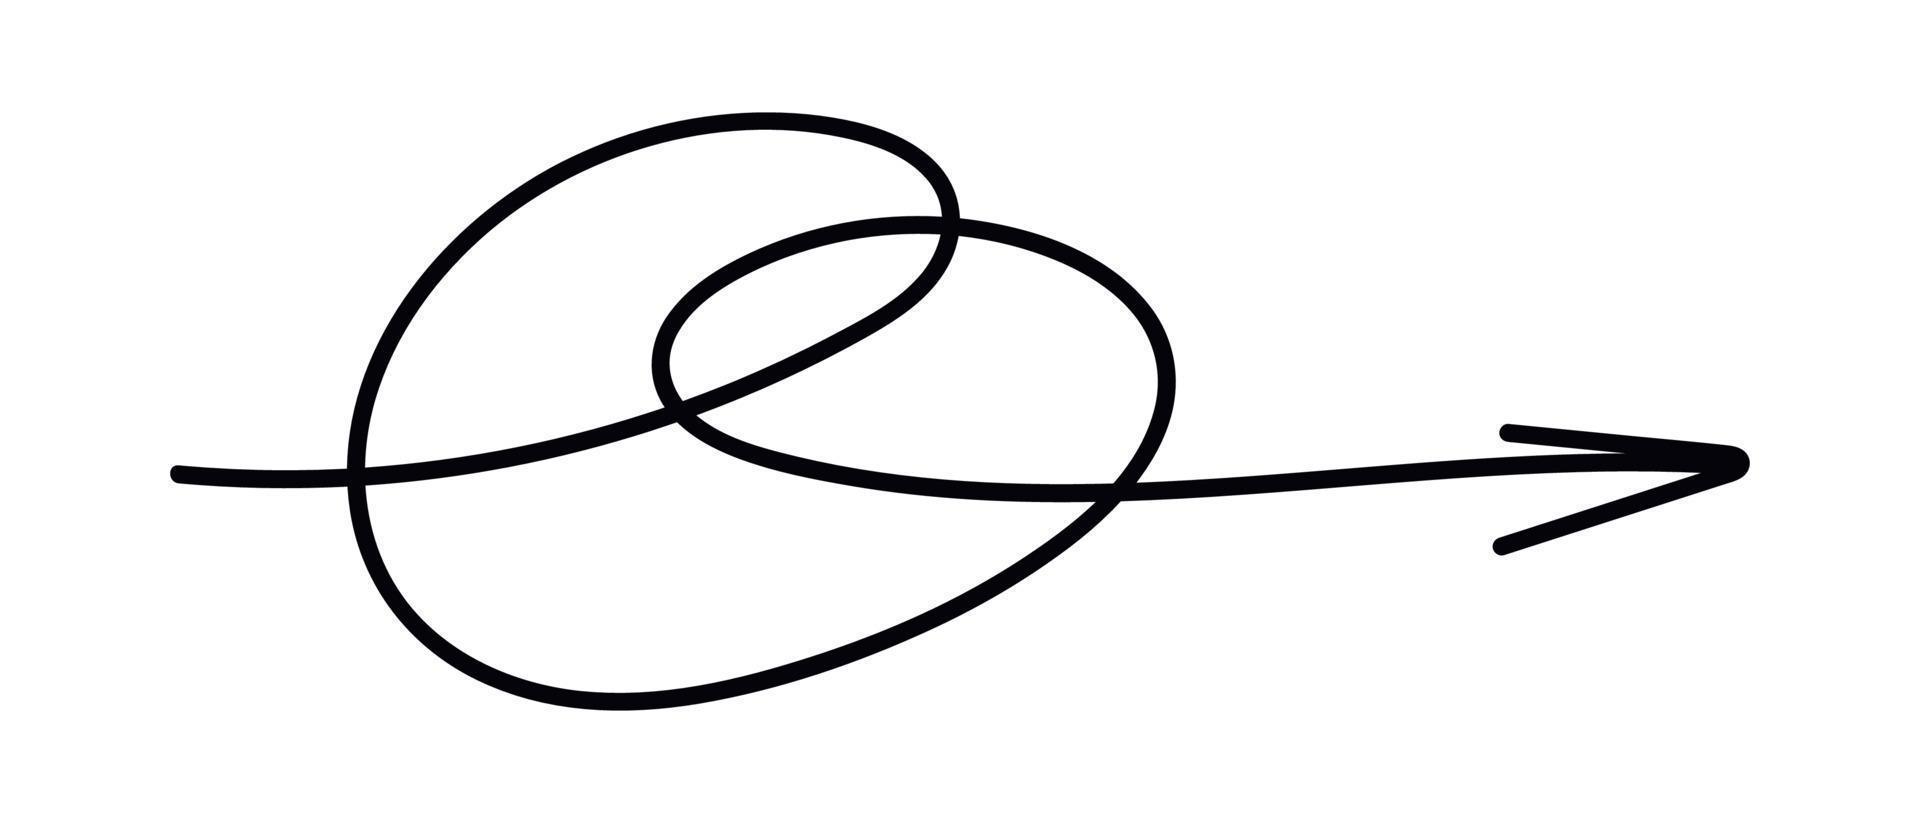 klotter linje pil. hand dragen klottra spiral pil. vektor isolerat illustration